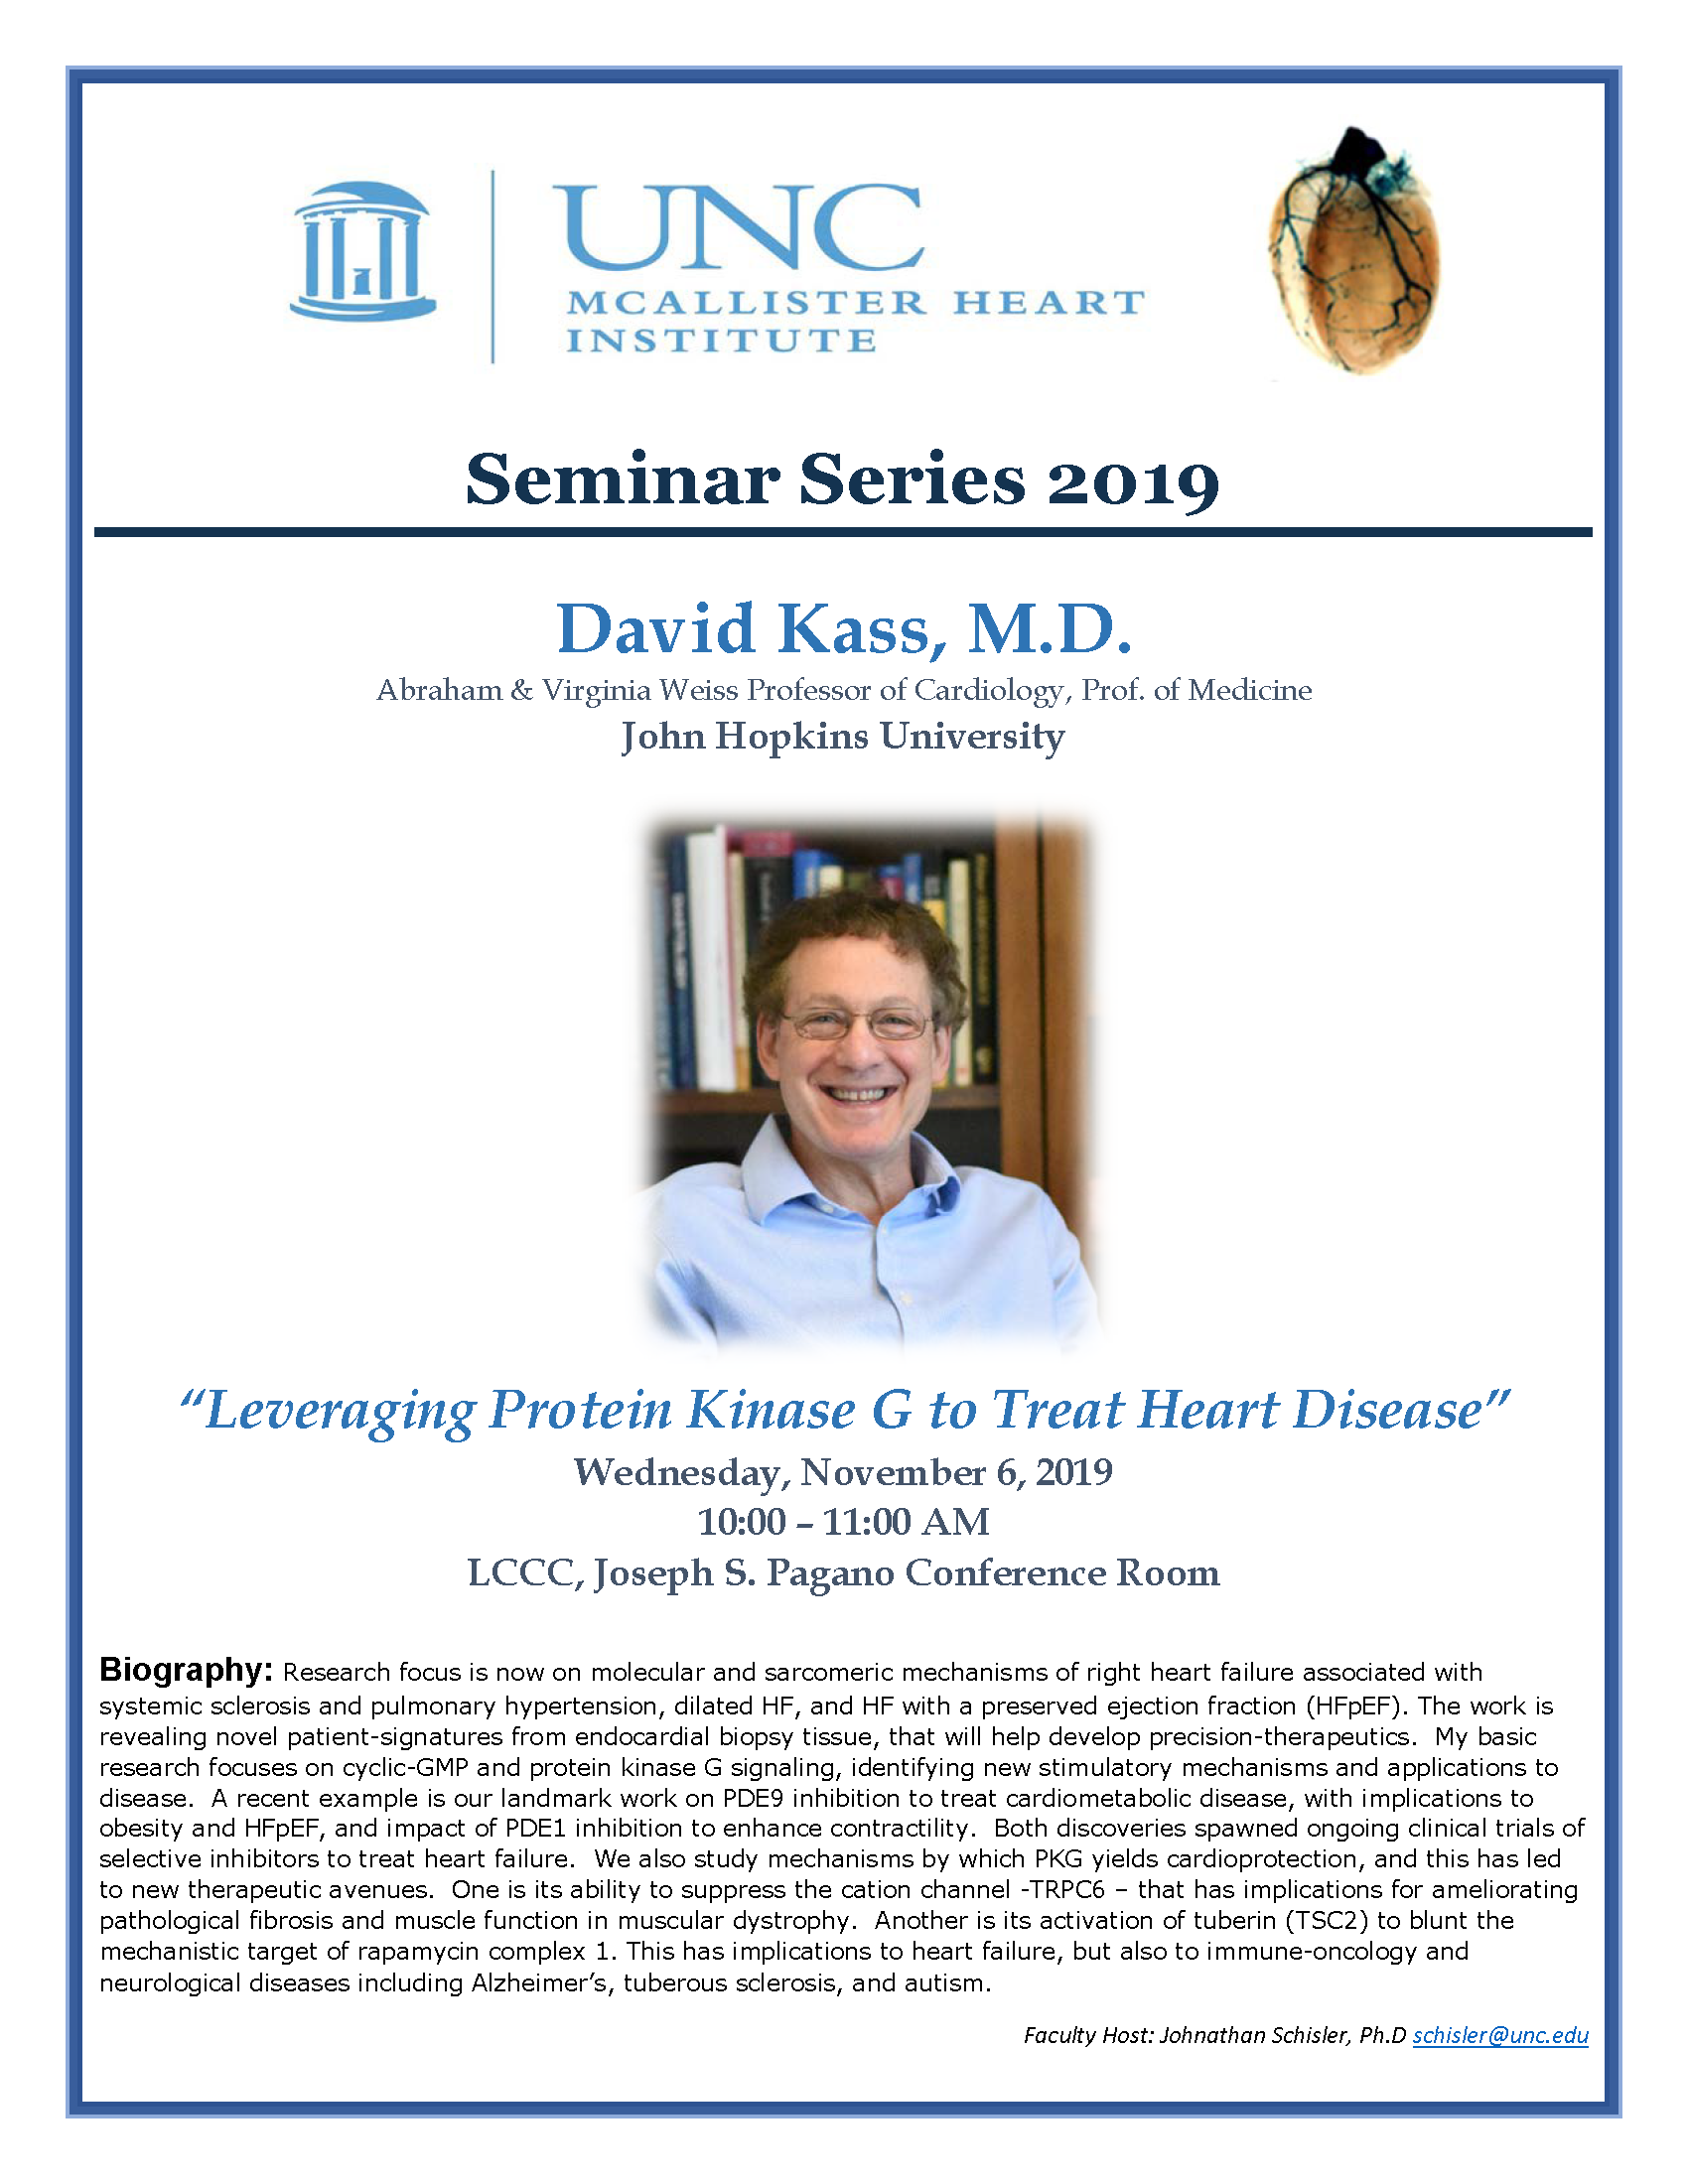 David Kass, M.D. MHI Seminar Flyer